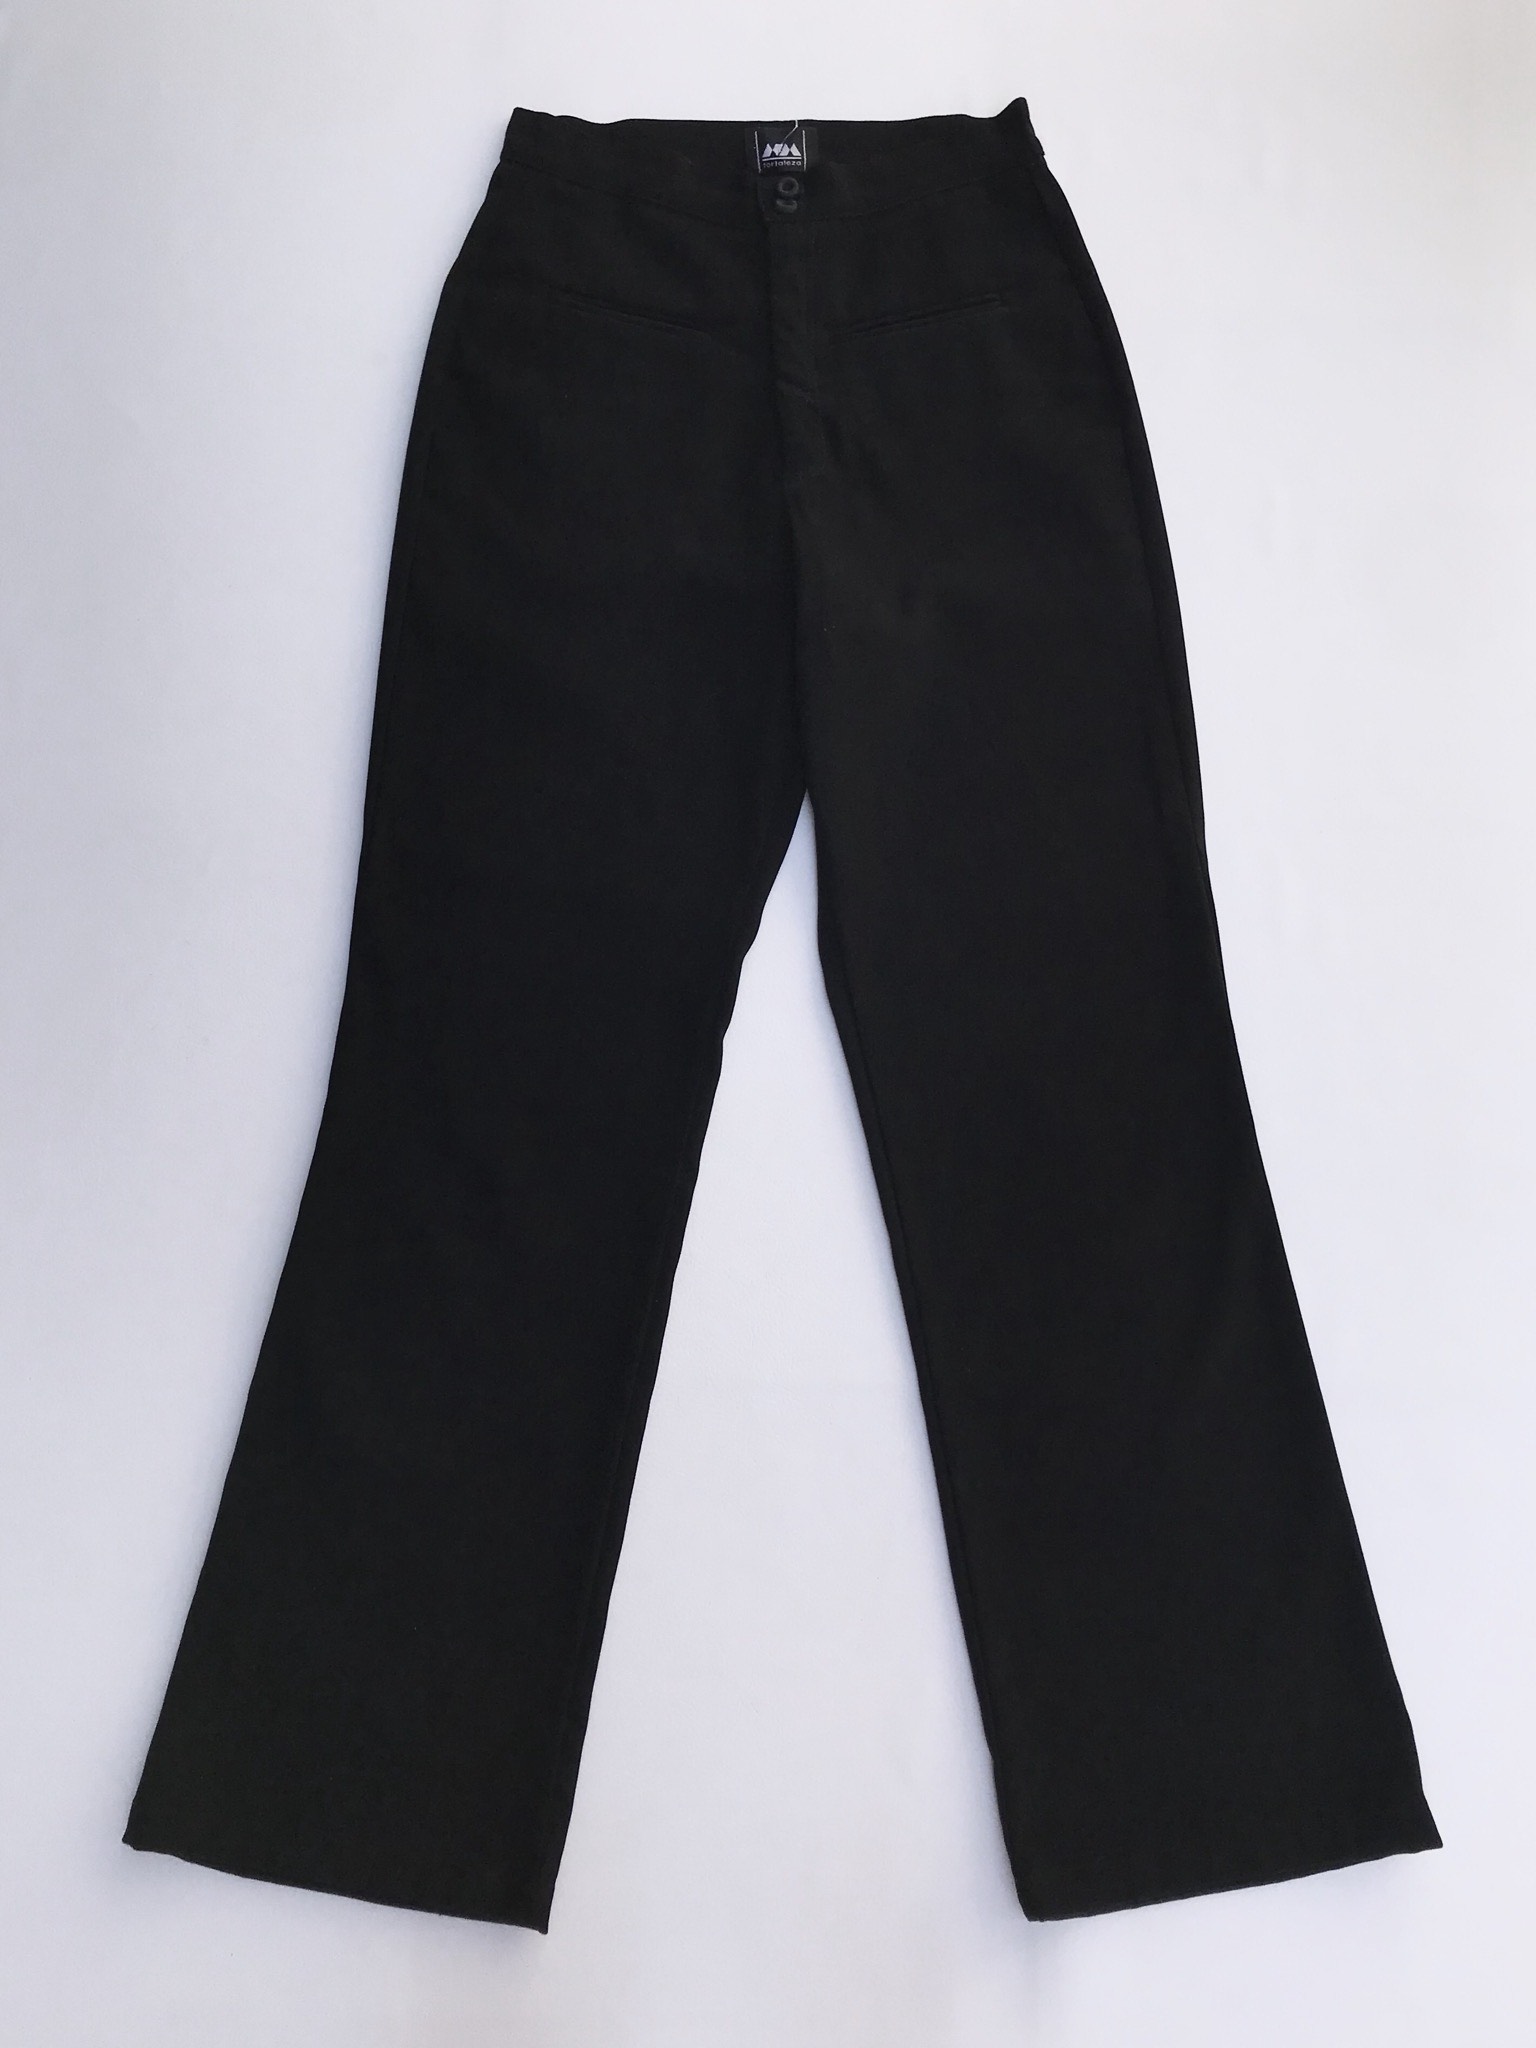 Pantalón vintage negro a la cintura, tela tipo pana, pretina delgada con dos botones, bolsillos delanteros y pinzas posteriores y pierna recta. ¡Lindo!
Talla 26